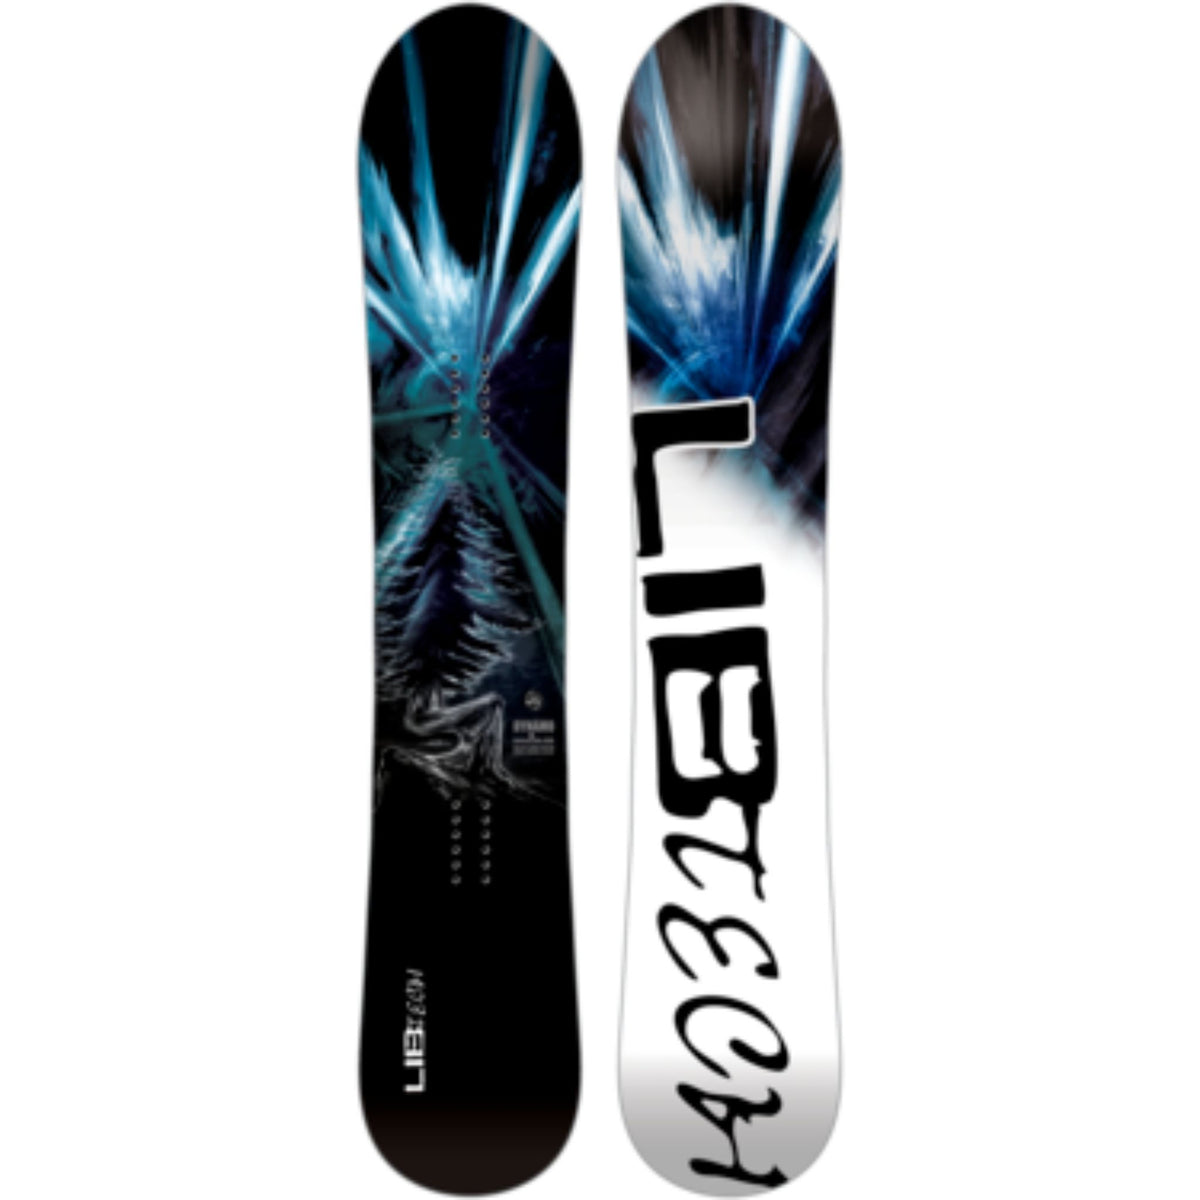 lib_tech_dynamo_snowboard_01